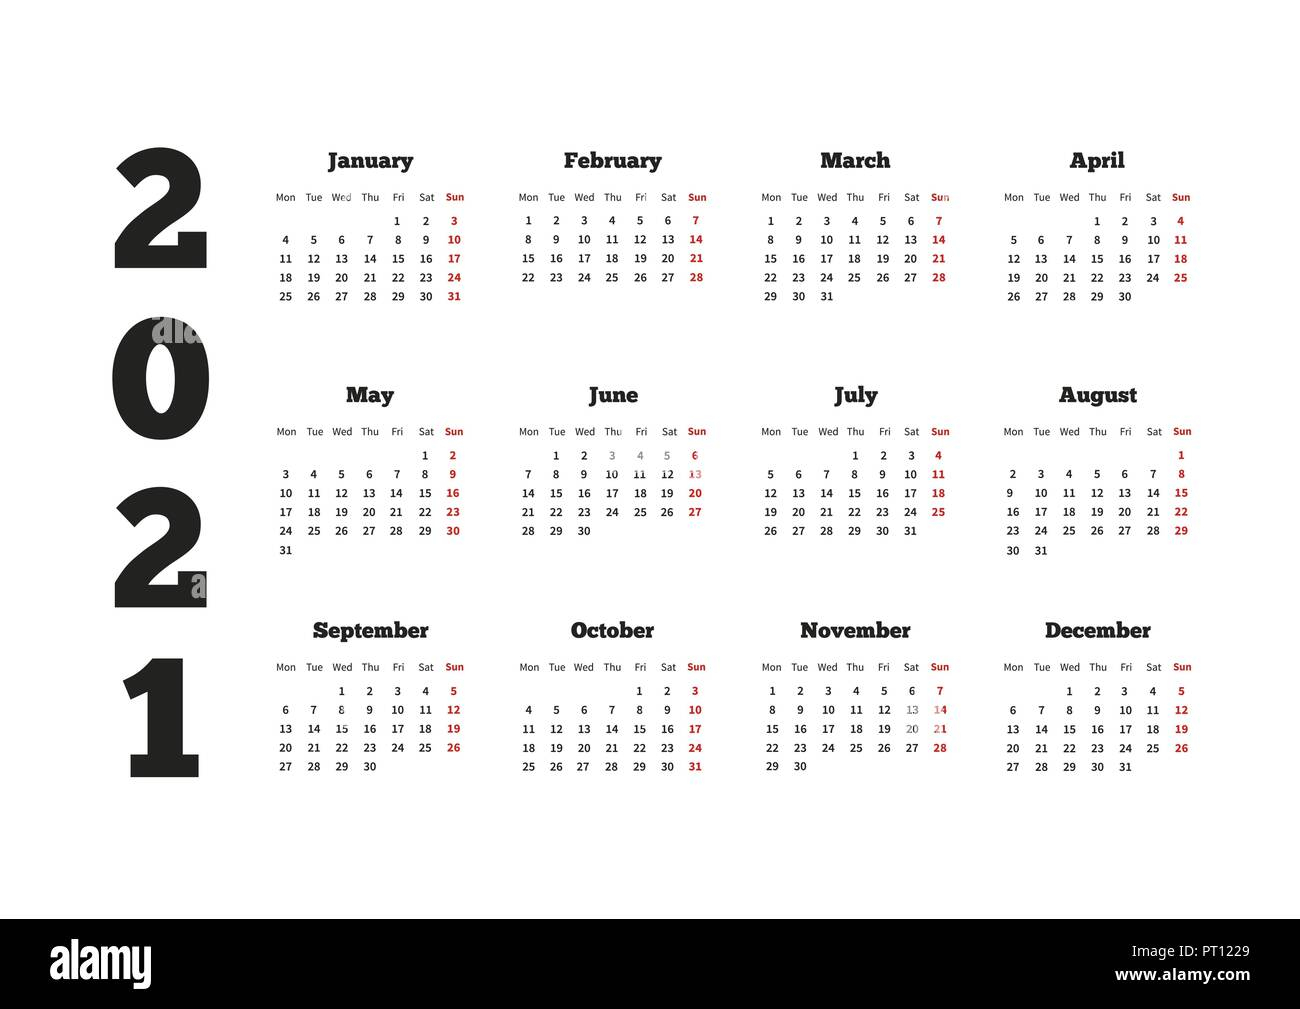 Calendario Del Año 2021 Con La Semana A Partir Del Lunes within Calendario Del 2021 Con Semanas